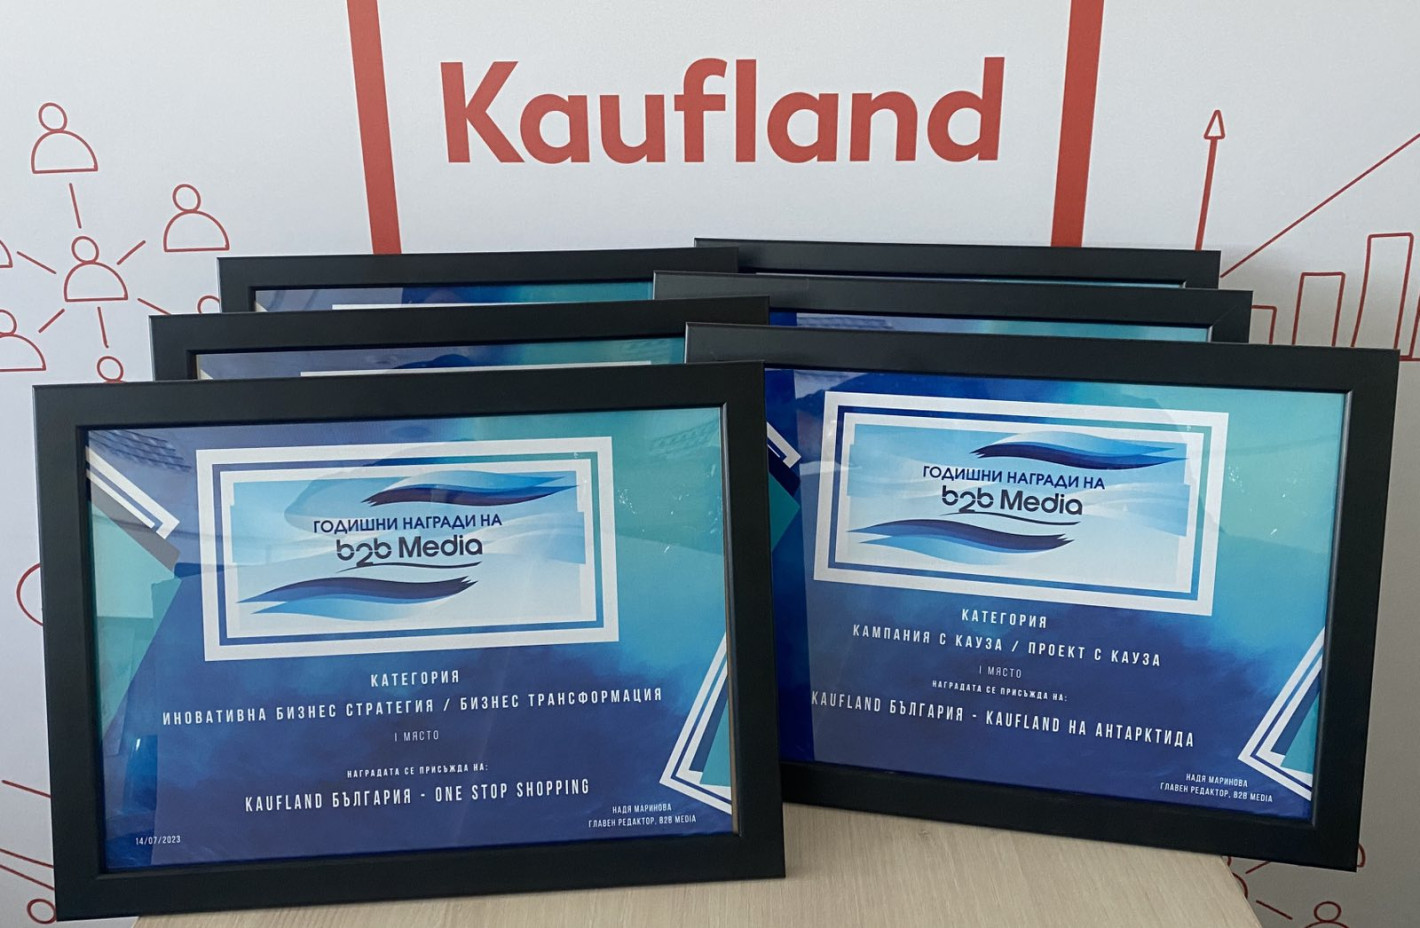 Kaufland България с най-голям брой награди в ритейл сектора от тазгодишното издание на b2b Media Awards